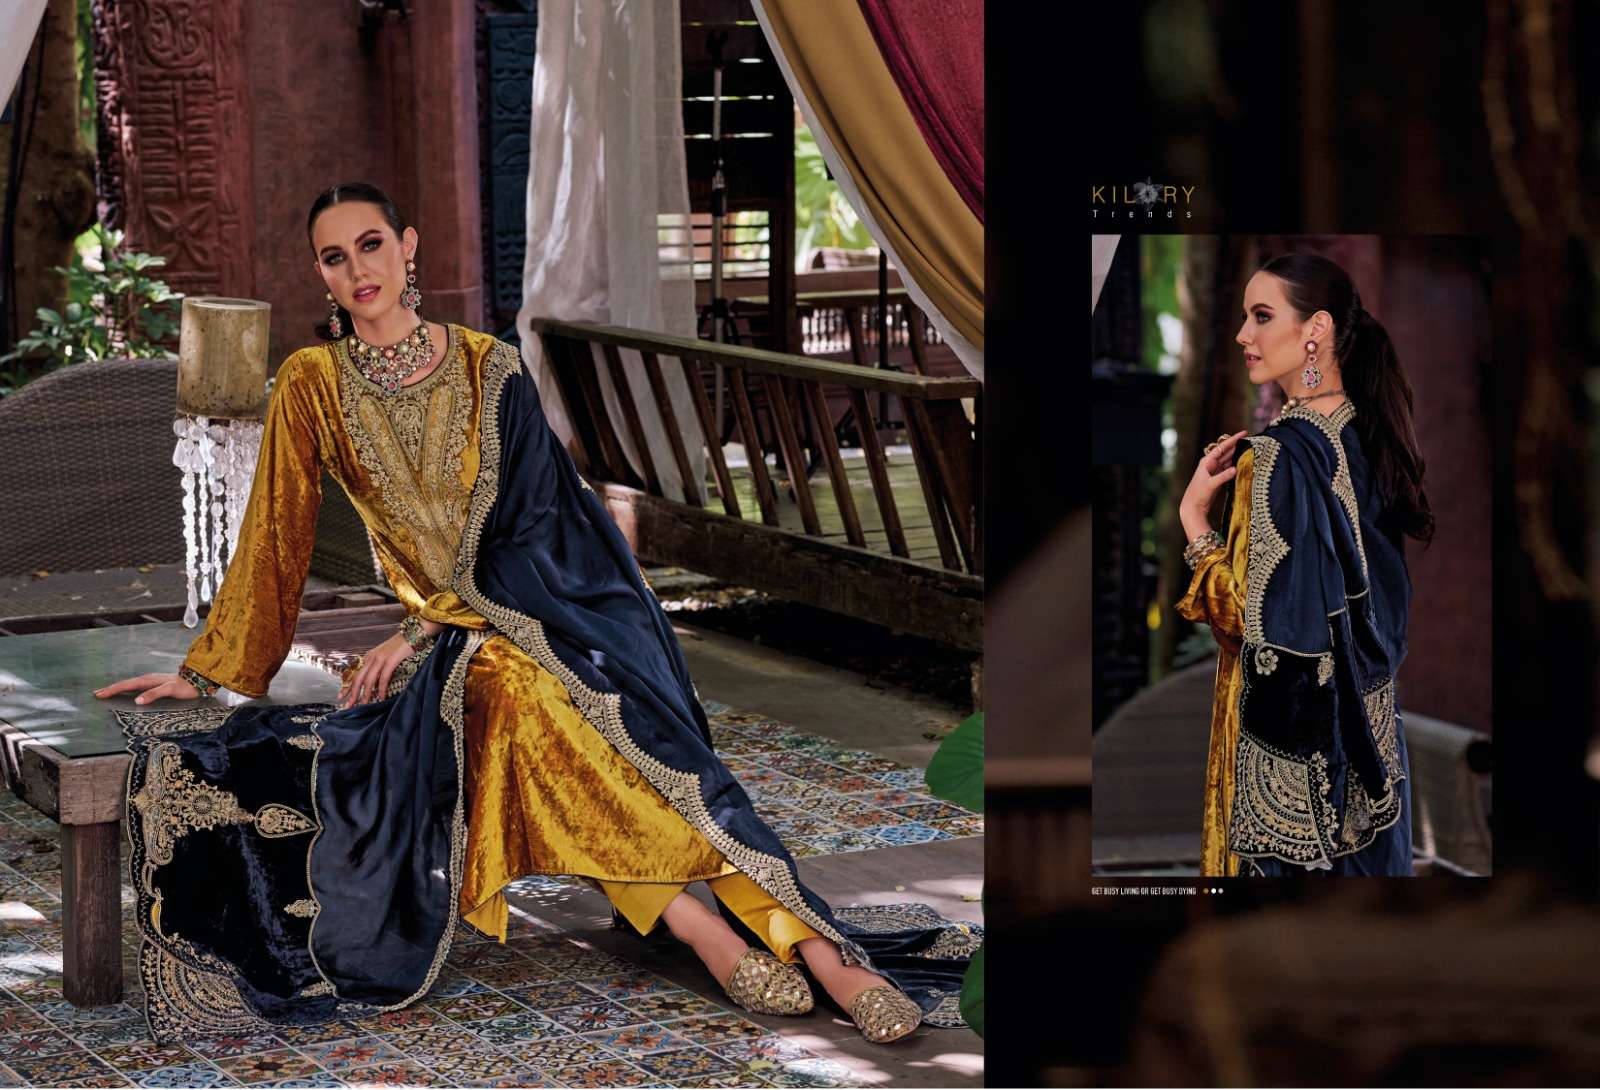 kilory trends velvet queen 481-486 series latest salwar kameez wholesaler surat gujarat